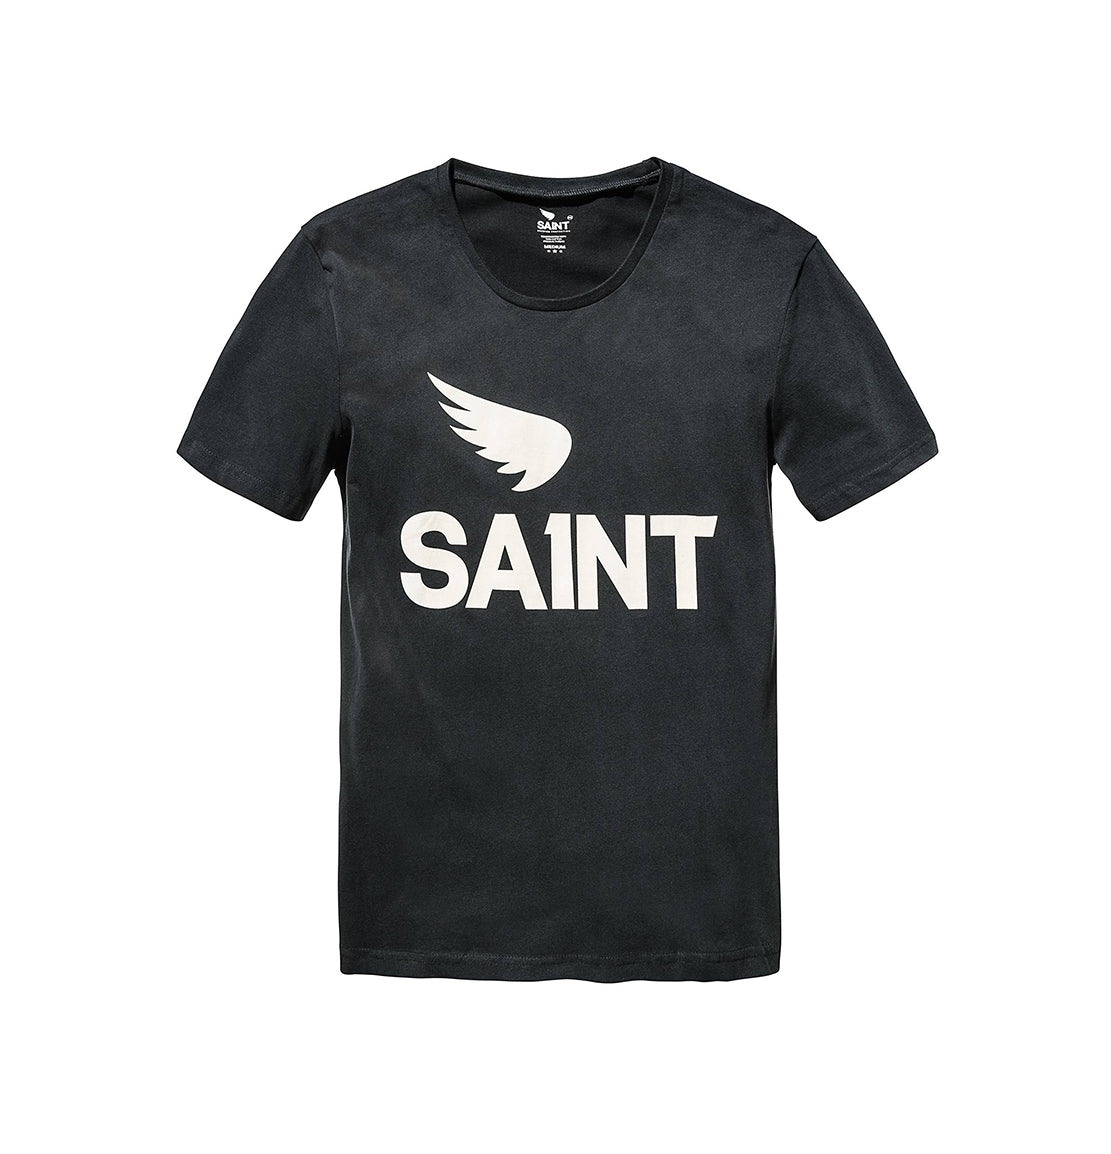 Saint t shirt